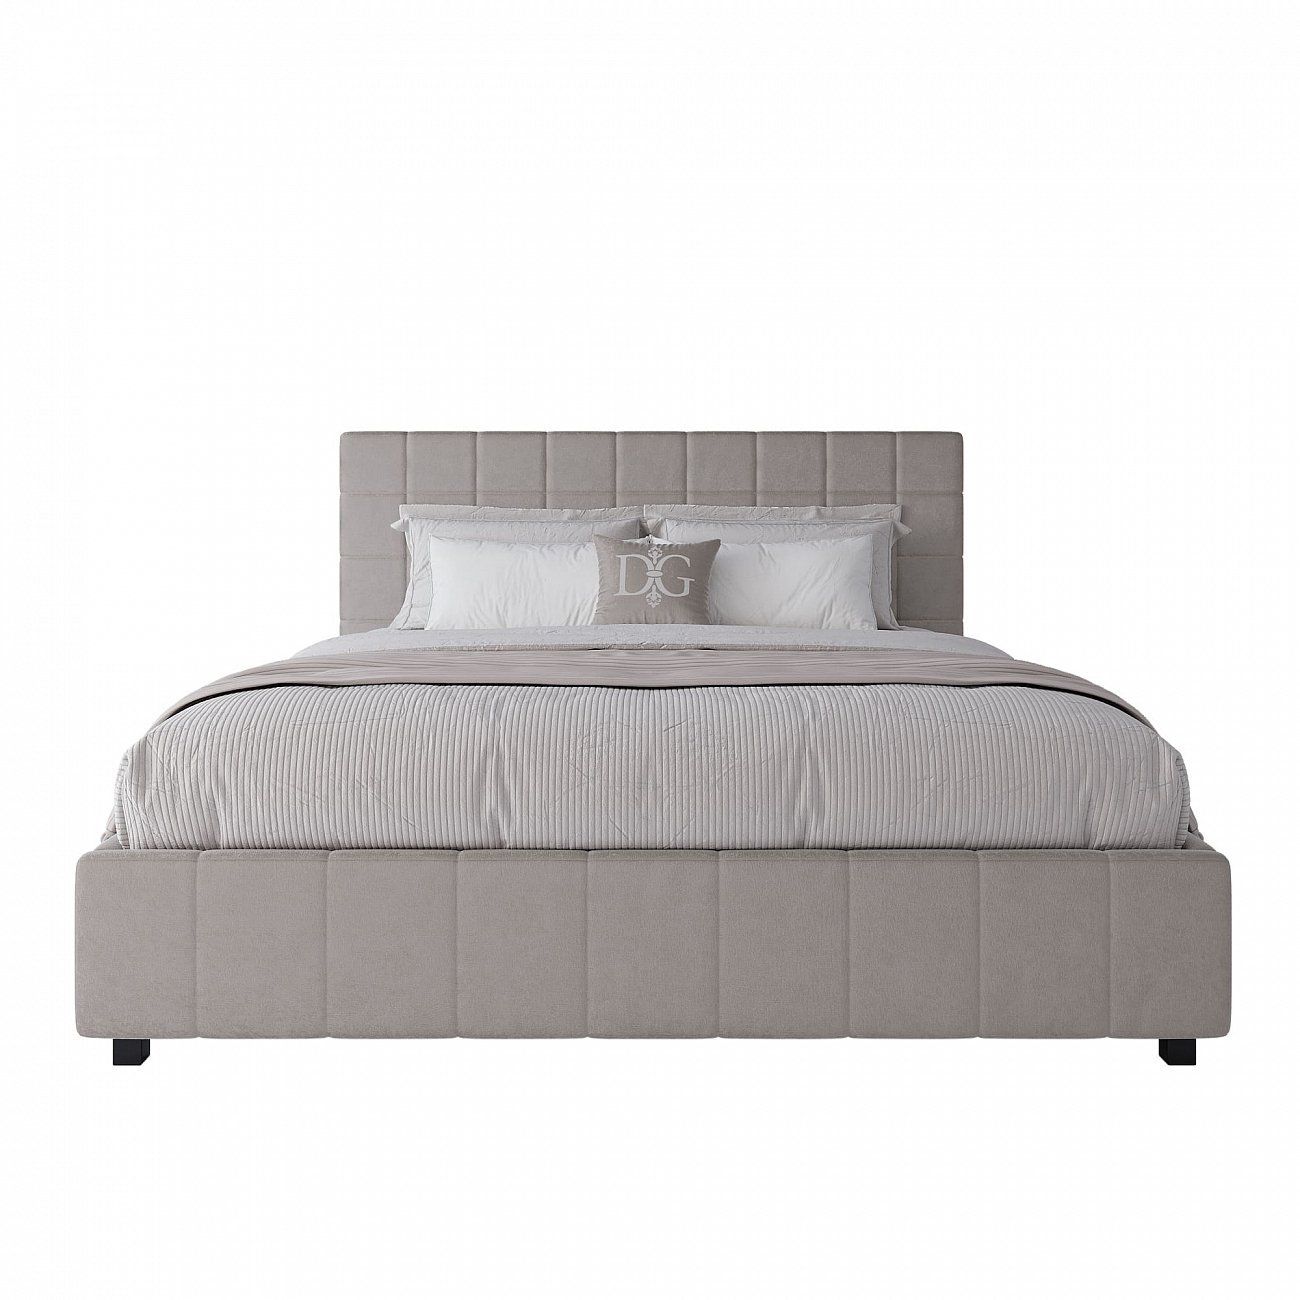 Double bed 180x200 cm light beige Shining Modern